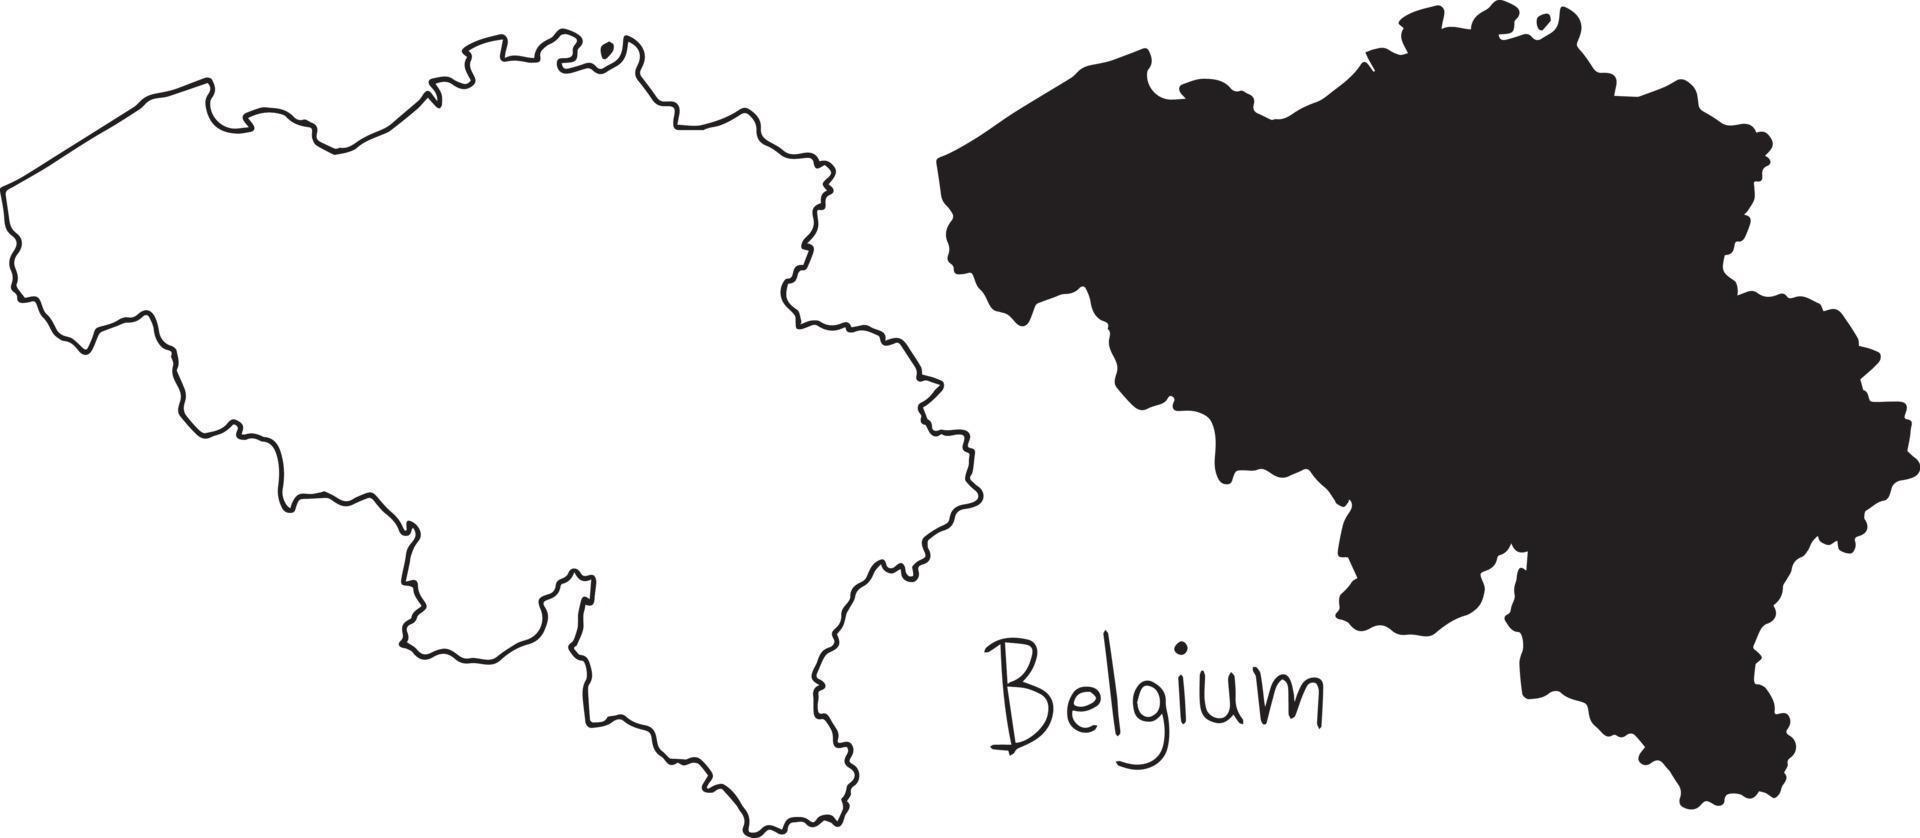 Mappa di contorno e silhouette del Belgio - illustrazione vettoriale